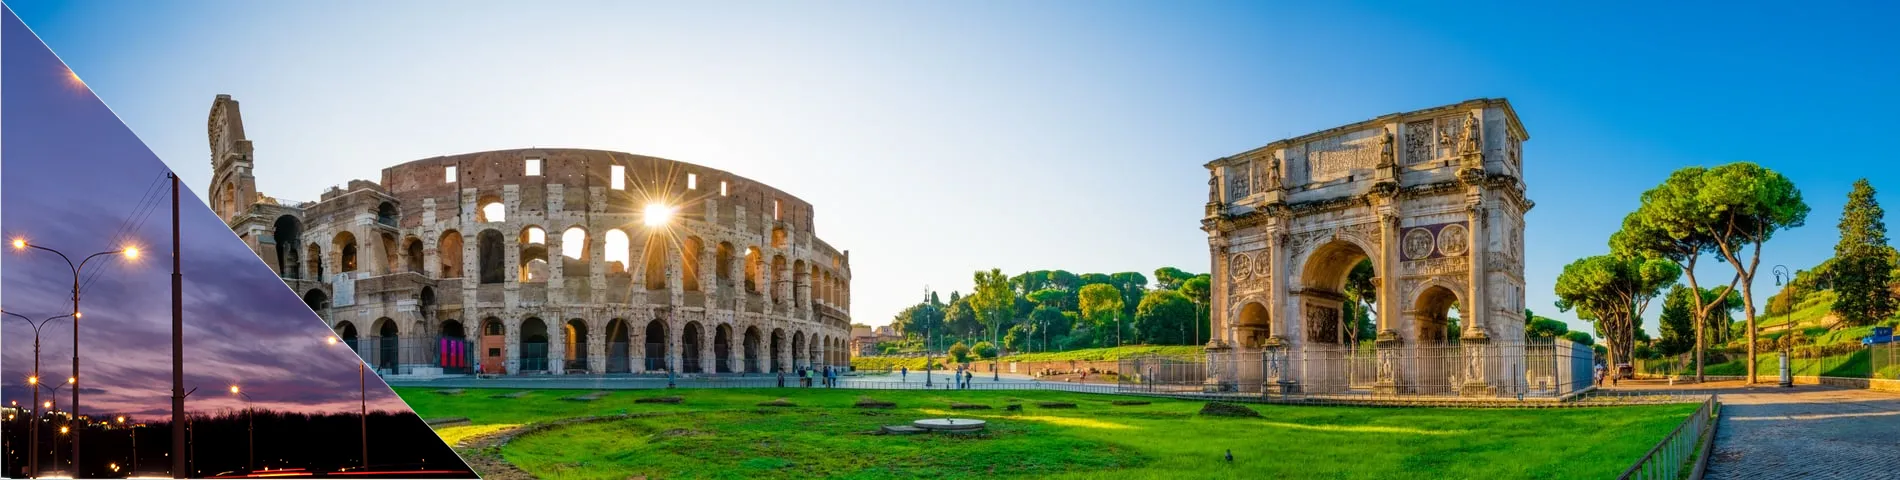 روما - الدورة المسائية